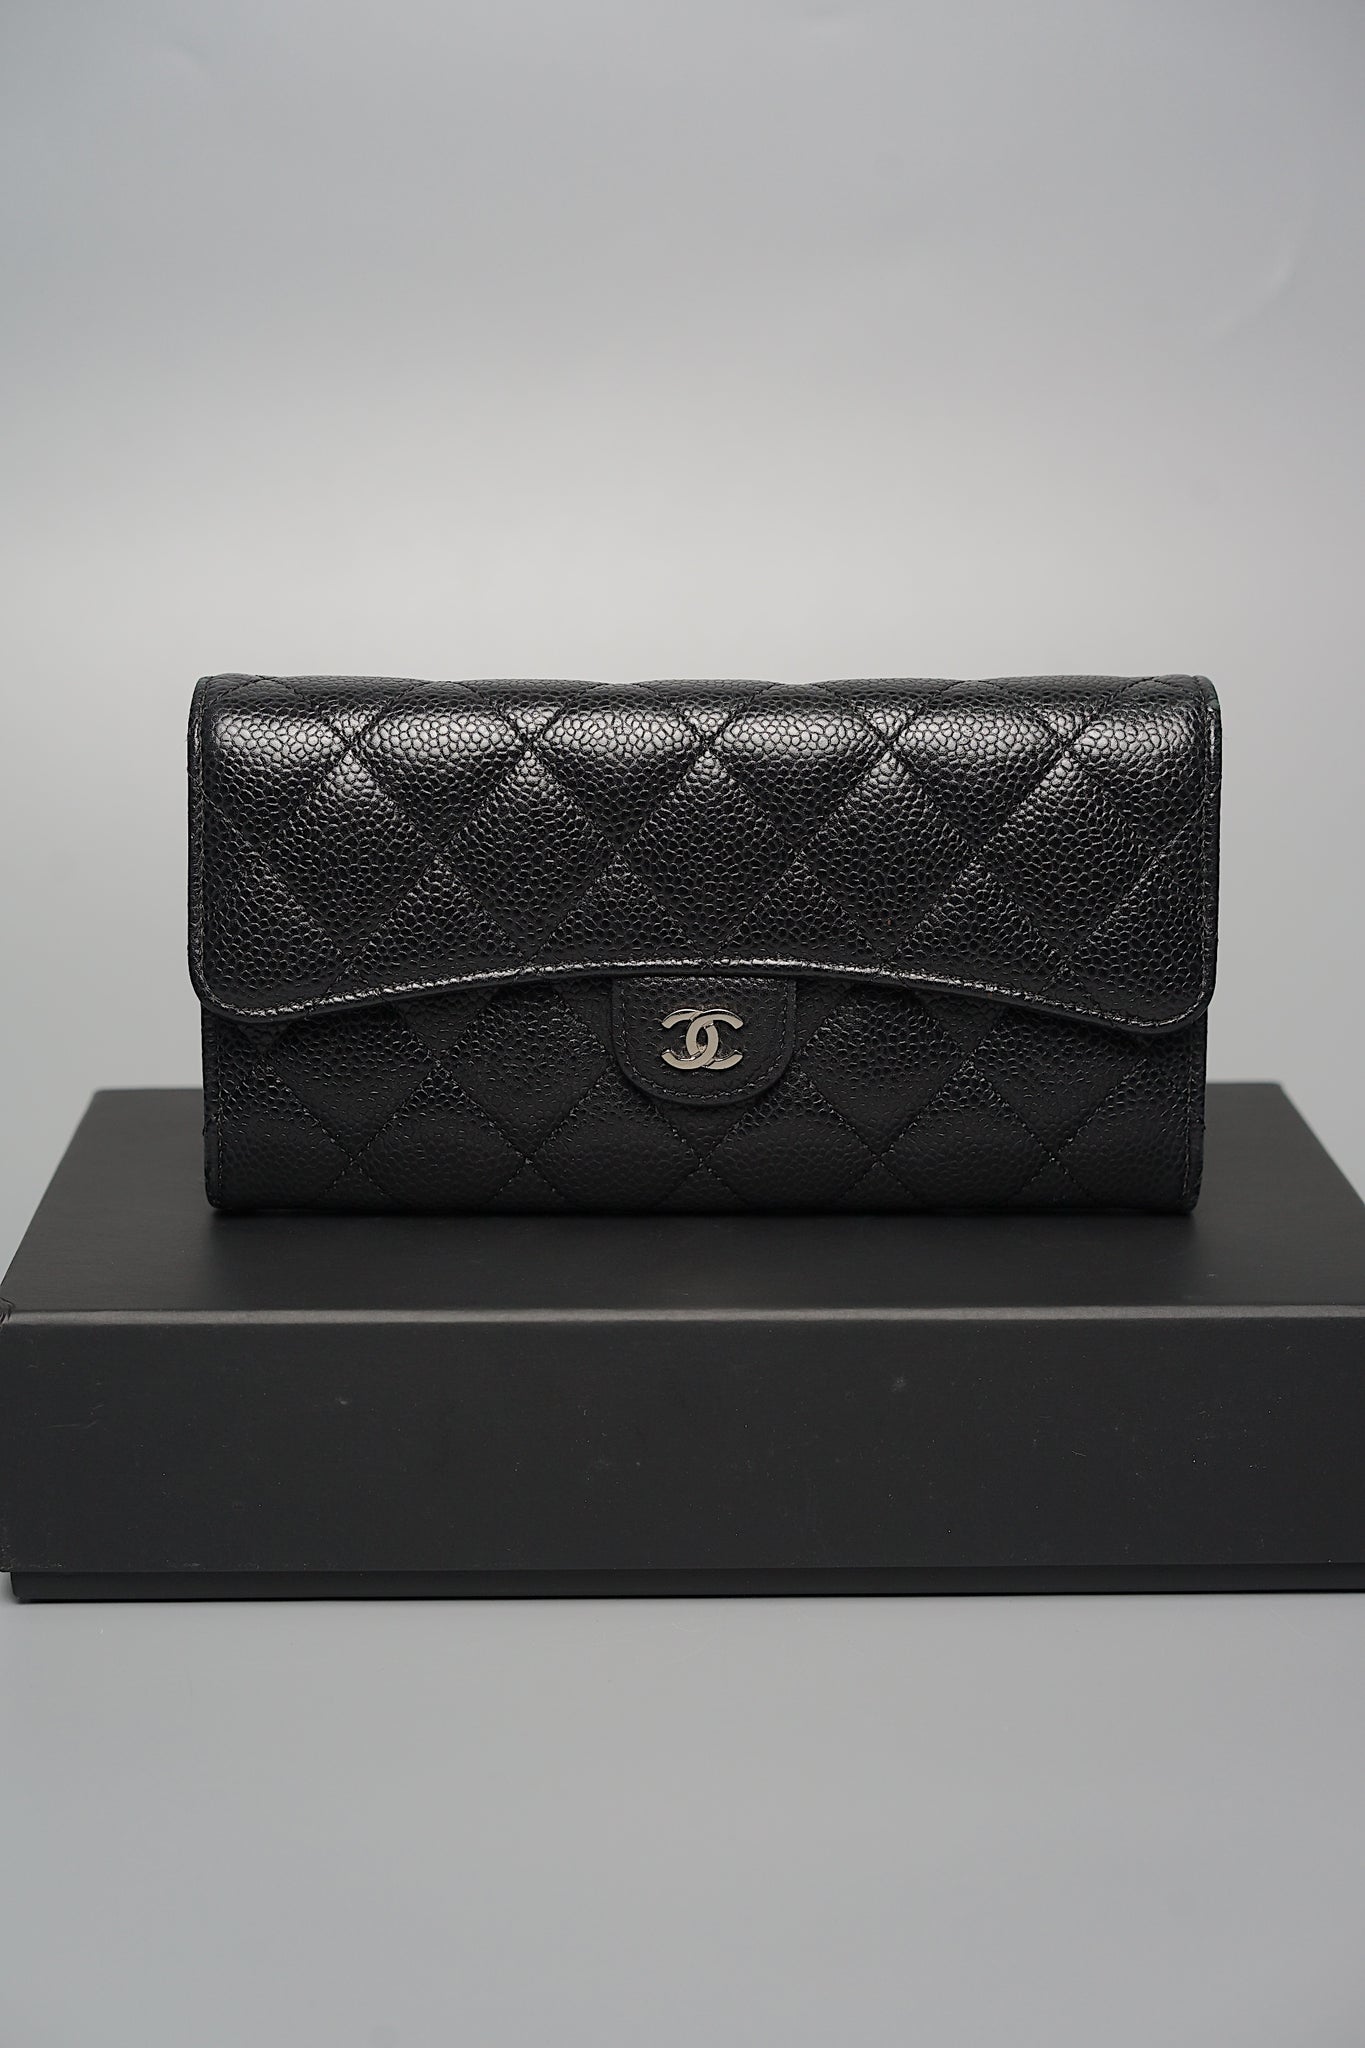 Chanel Classic Long Flap Purse Wallet in Black Caviar Shw